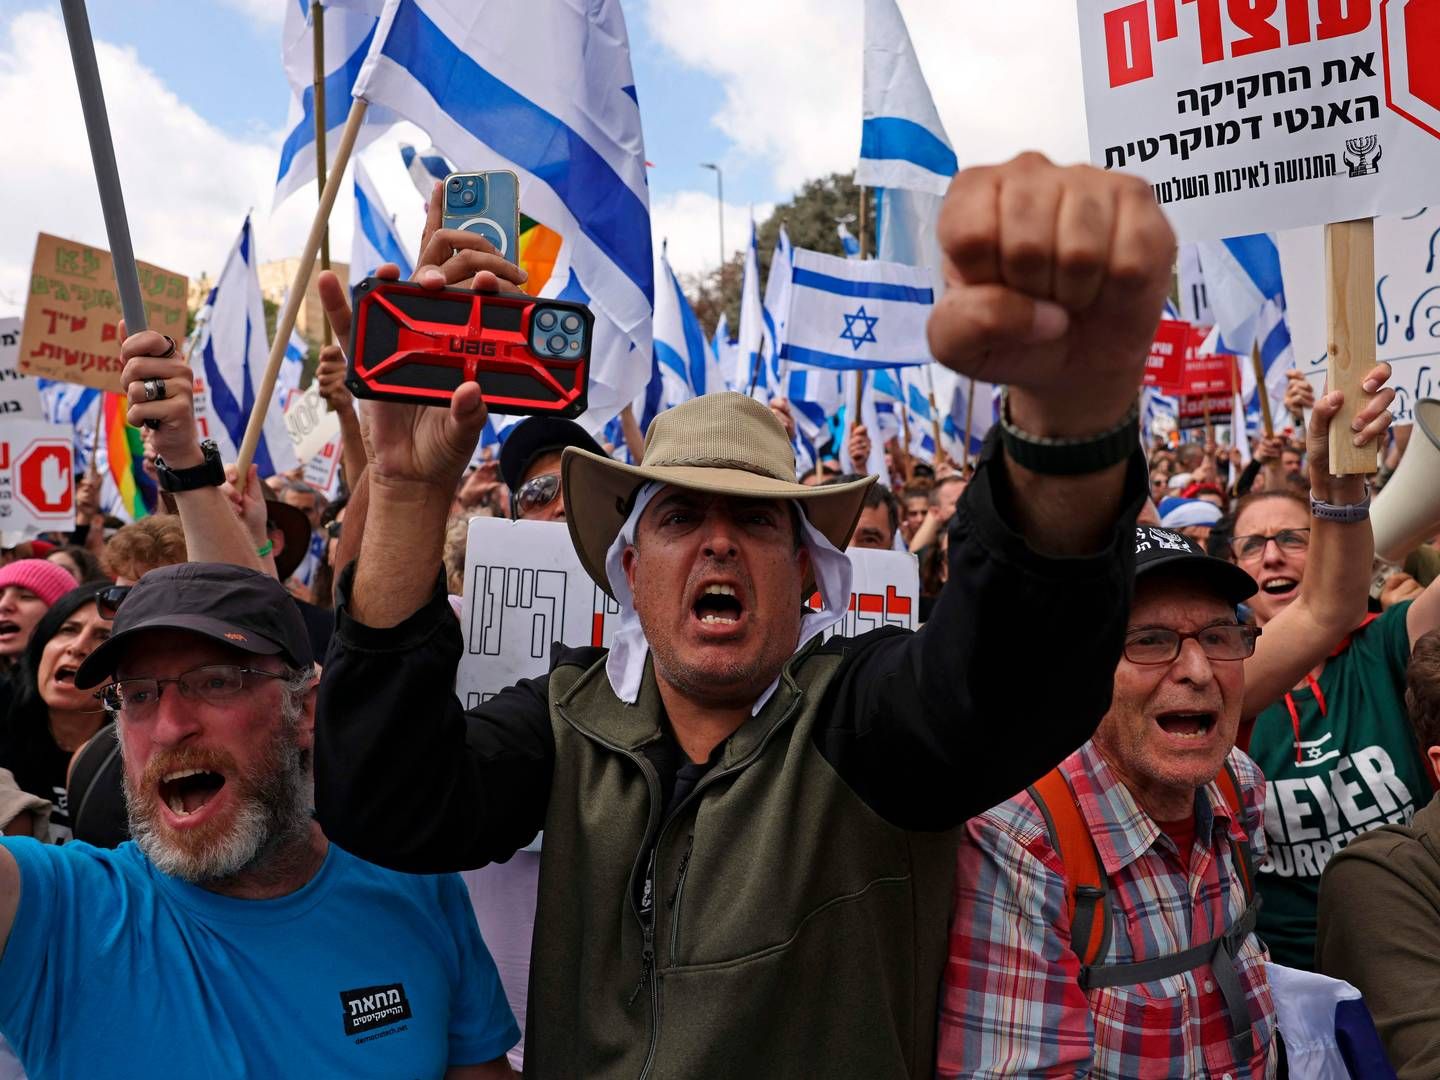 Demonstranter foran Israels parlament i Jerusalem råbte mandag slogans imod Netanyahus retsreform. Krisen har skubbet Israel ud i en politisk krise. | Foto: Hazem Bader